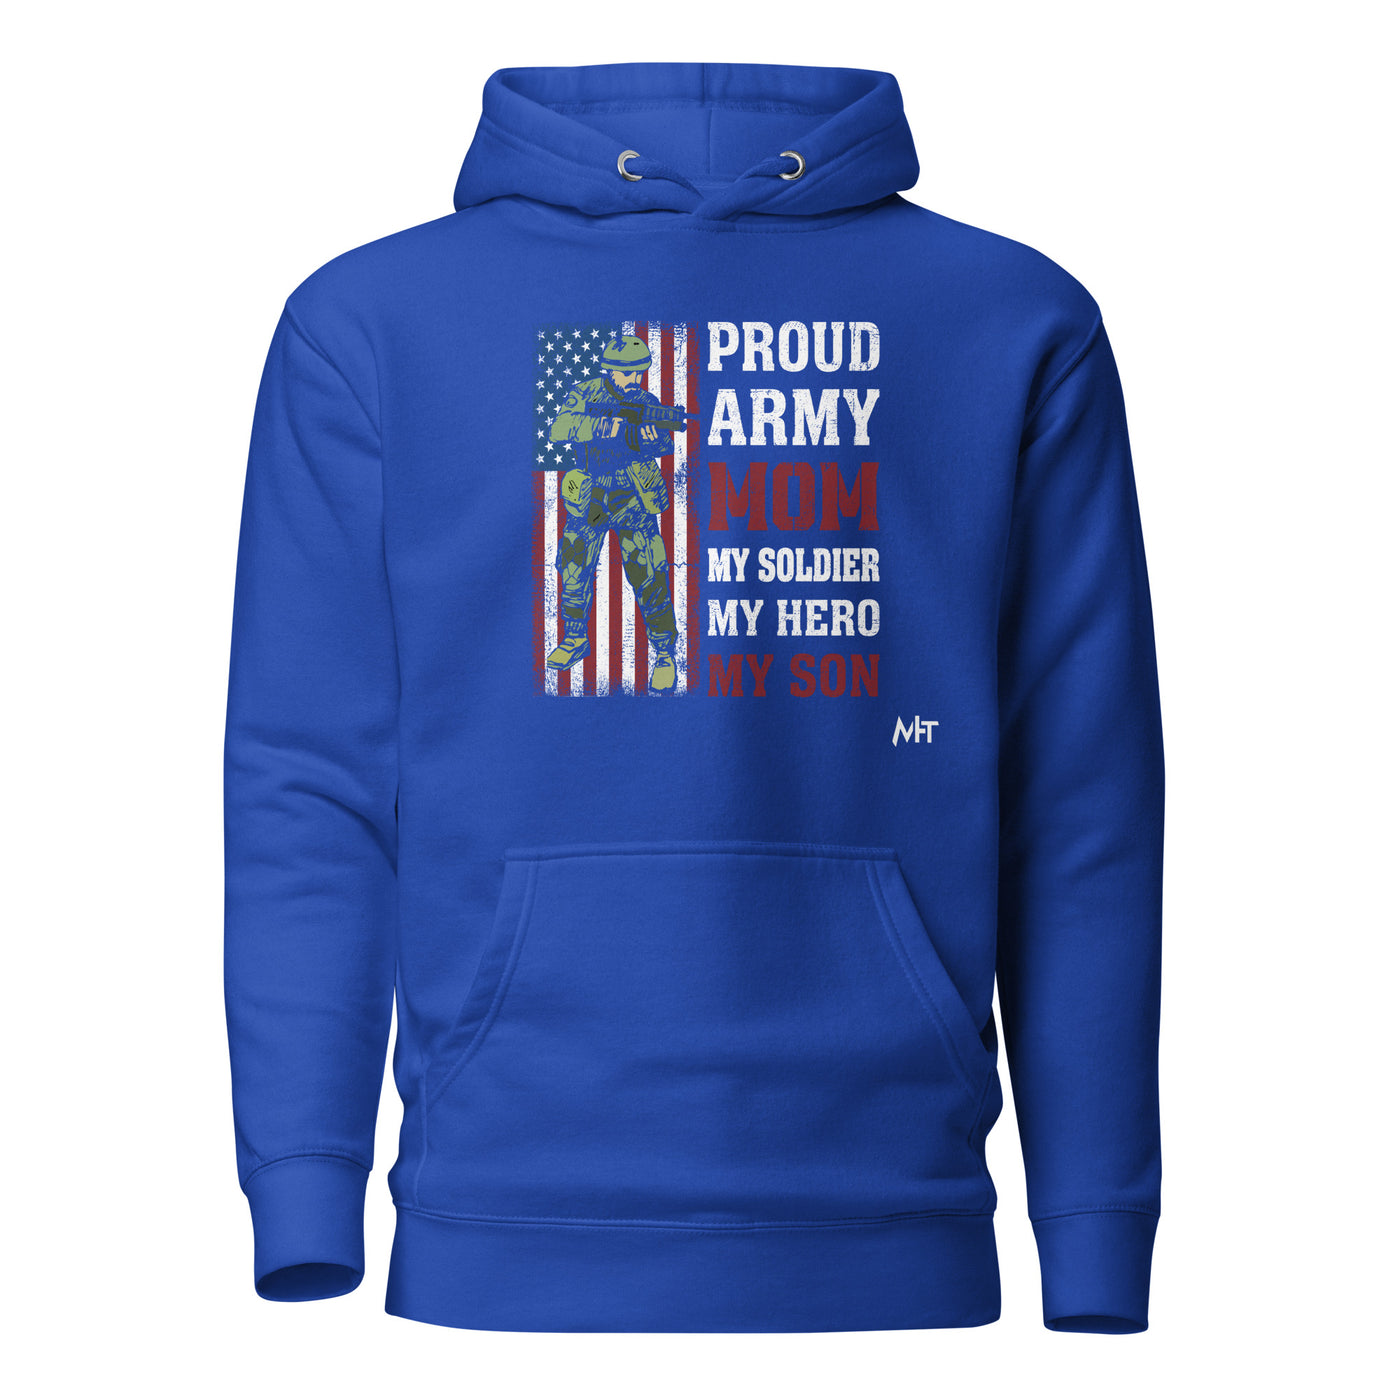 Proud Army Mom - Unisex Hoodie